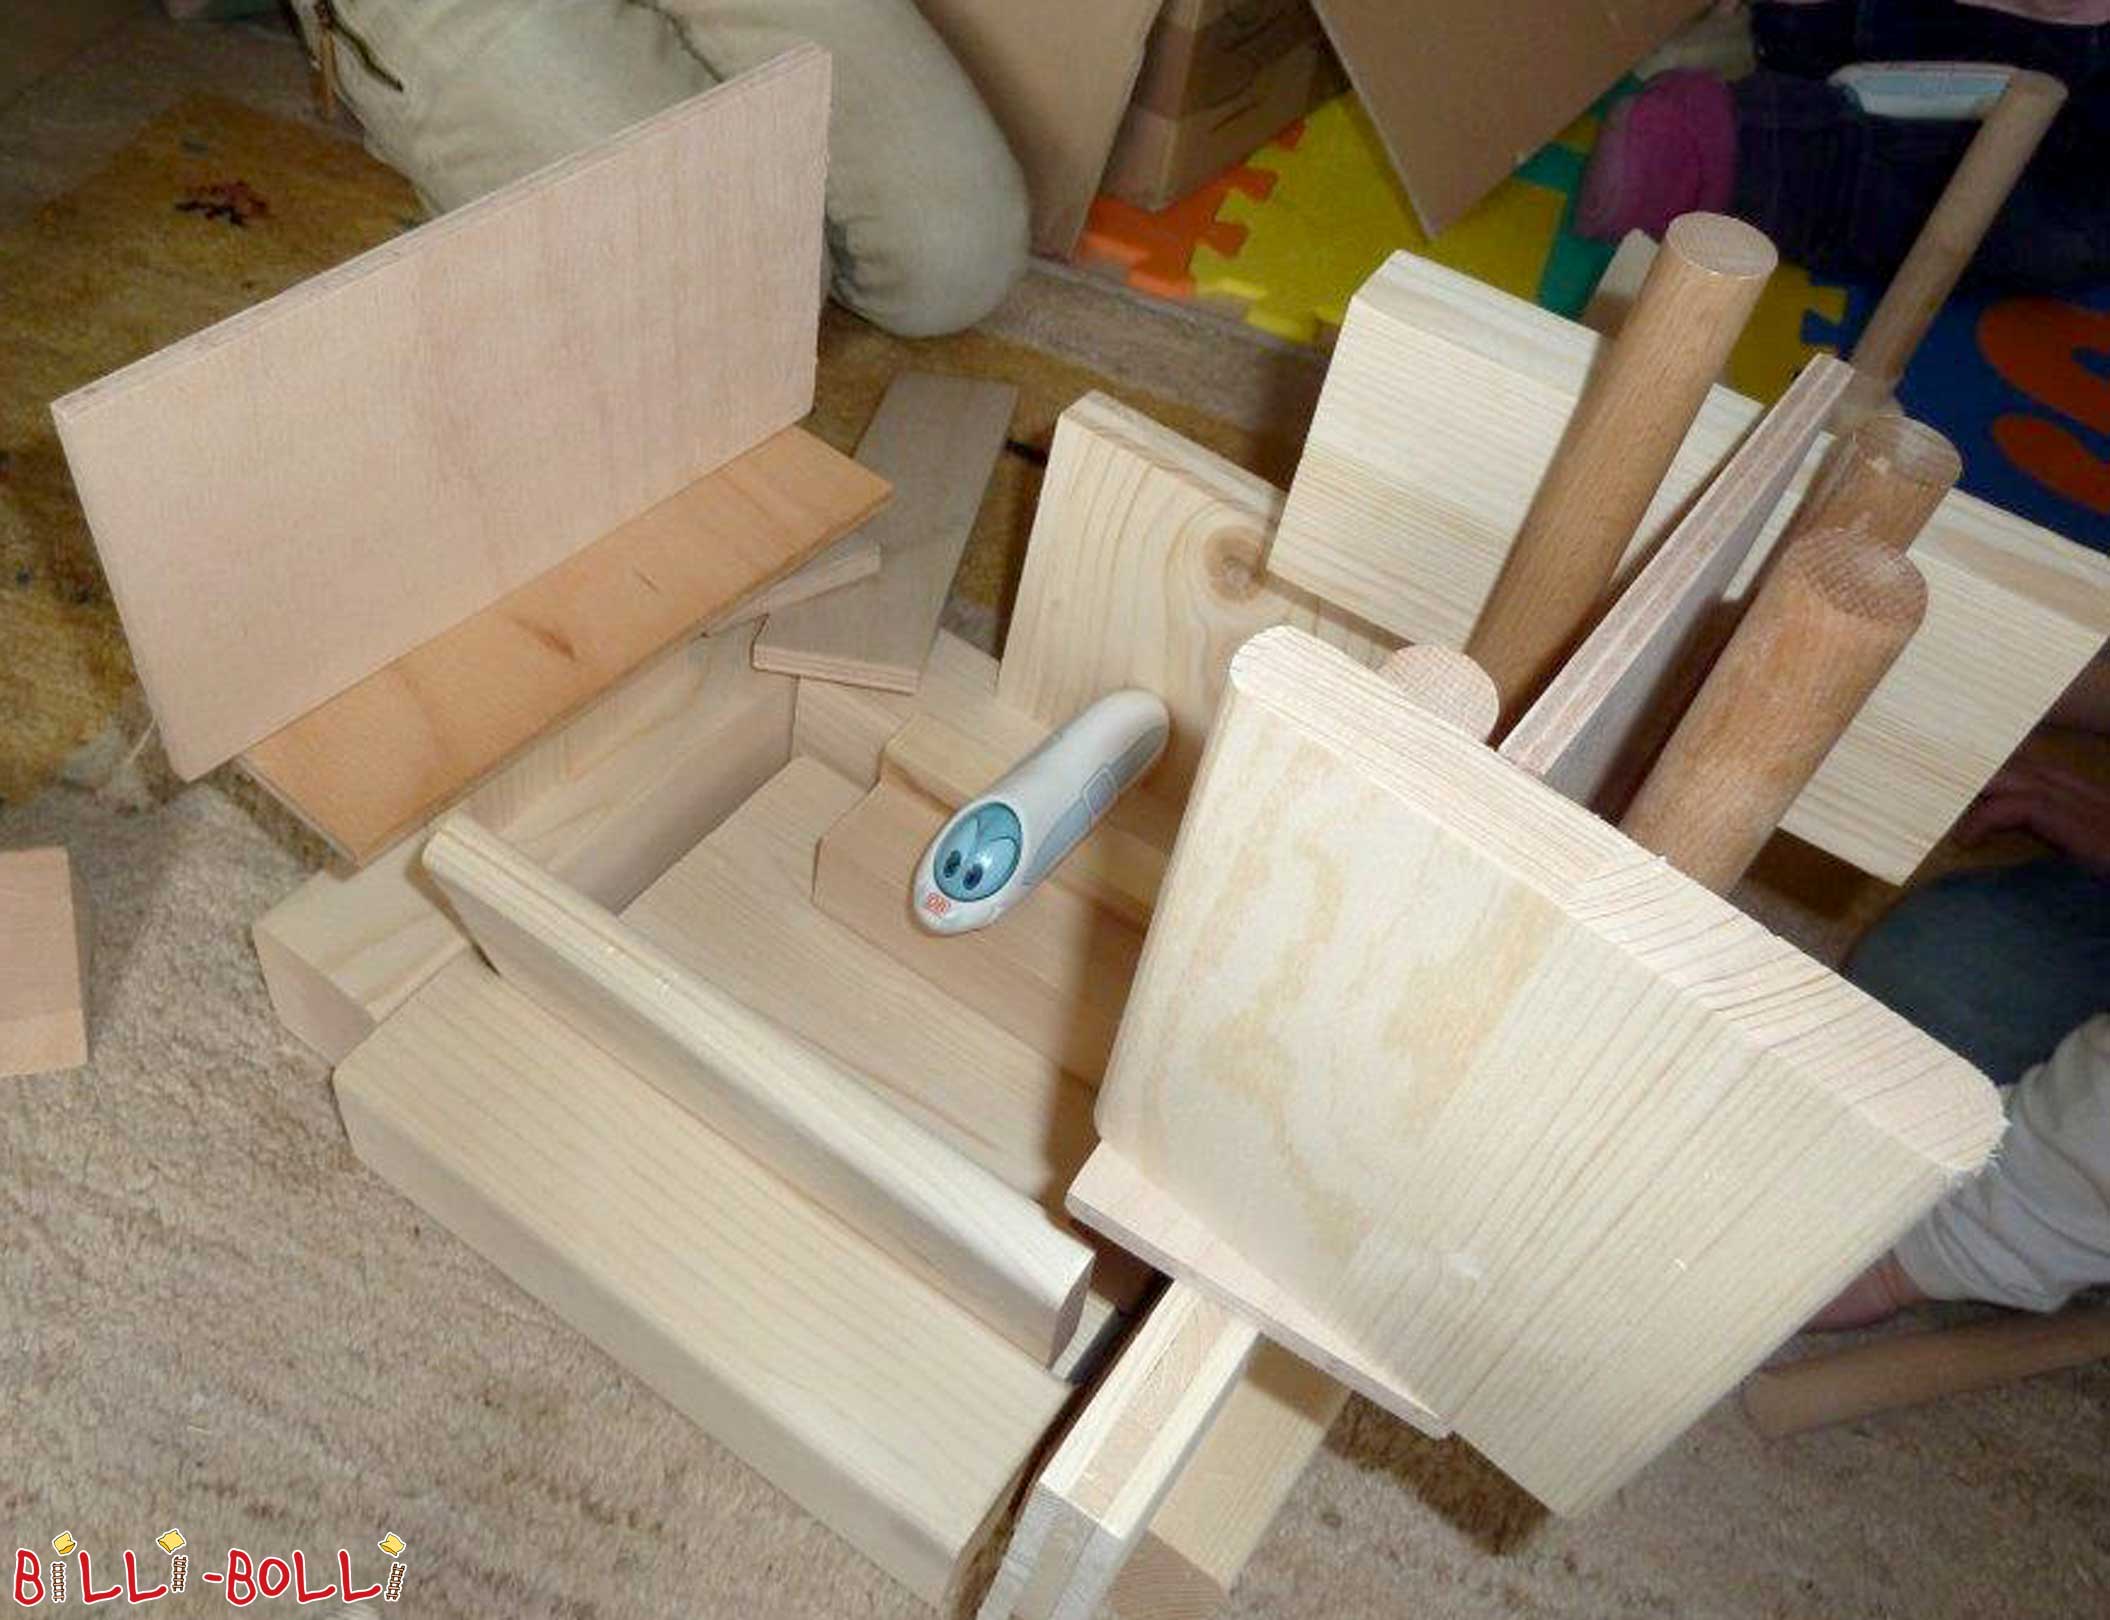 Kostenloses Bastelholz für Kindergärten (Tipps & Ideen)